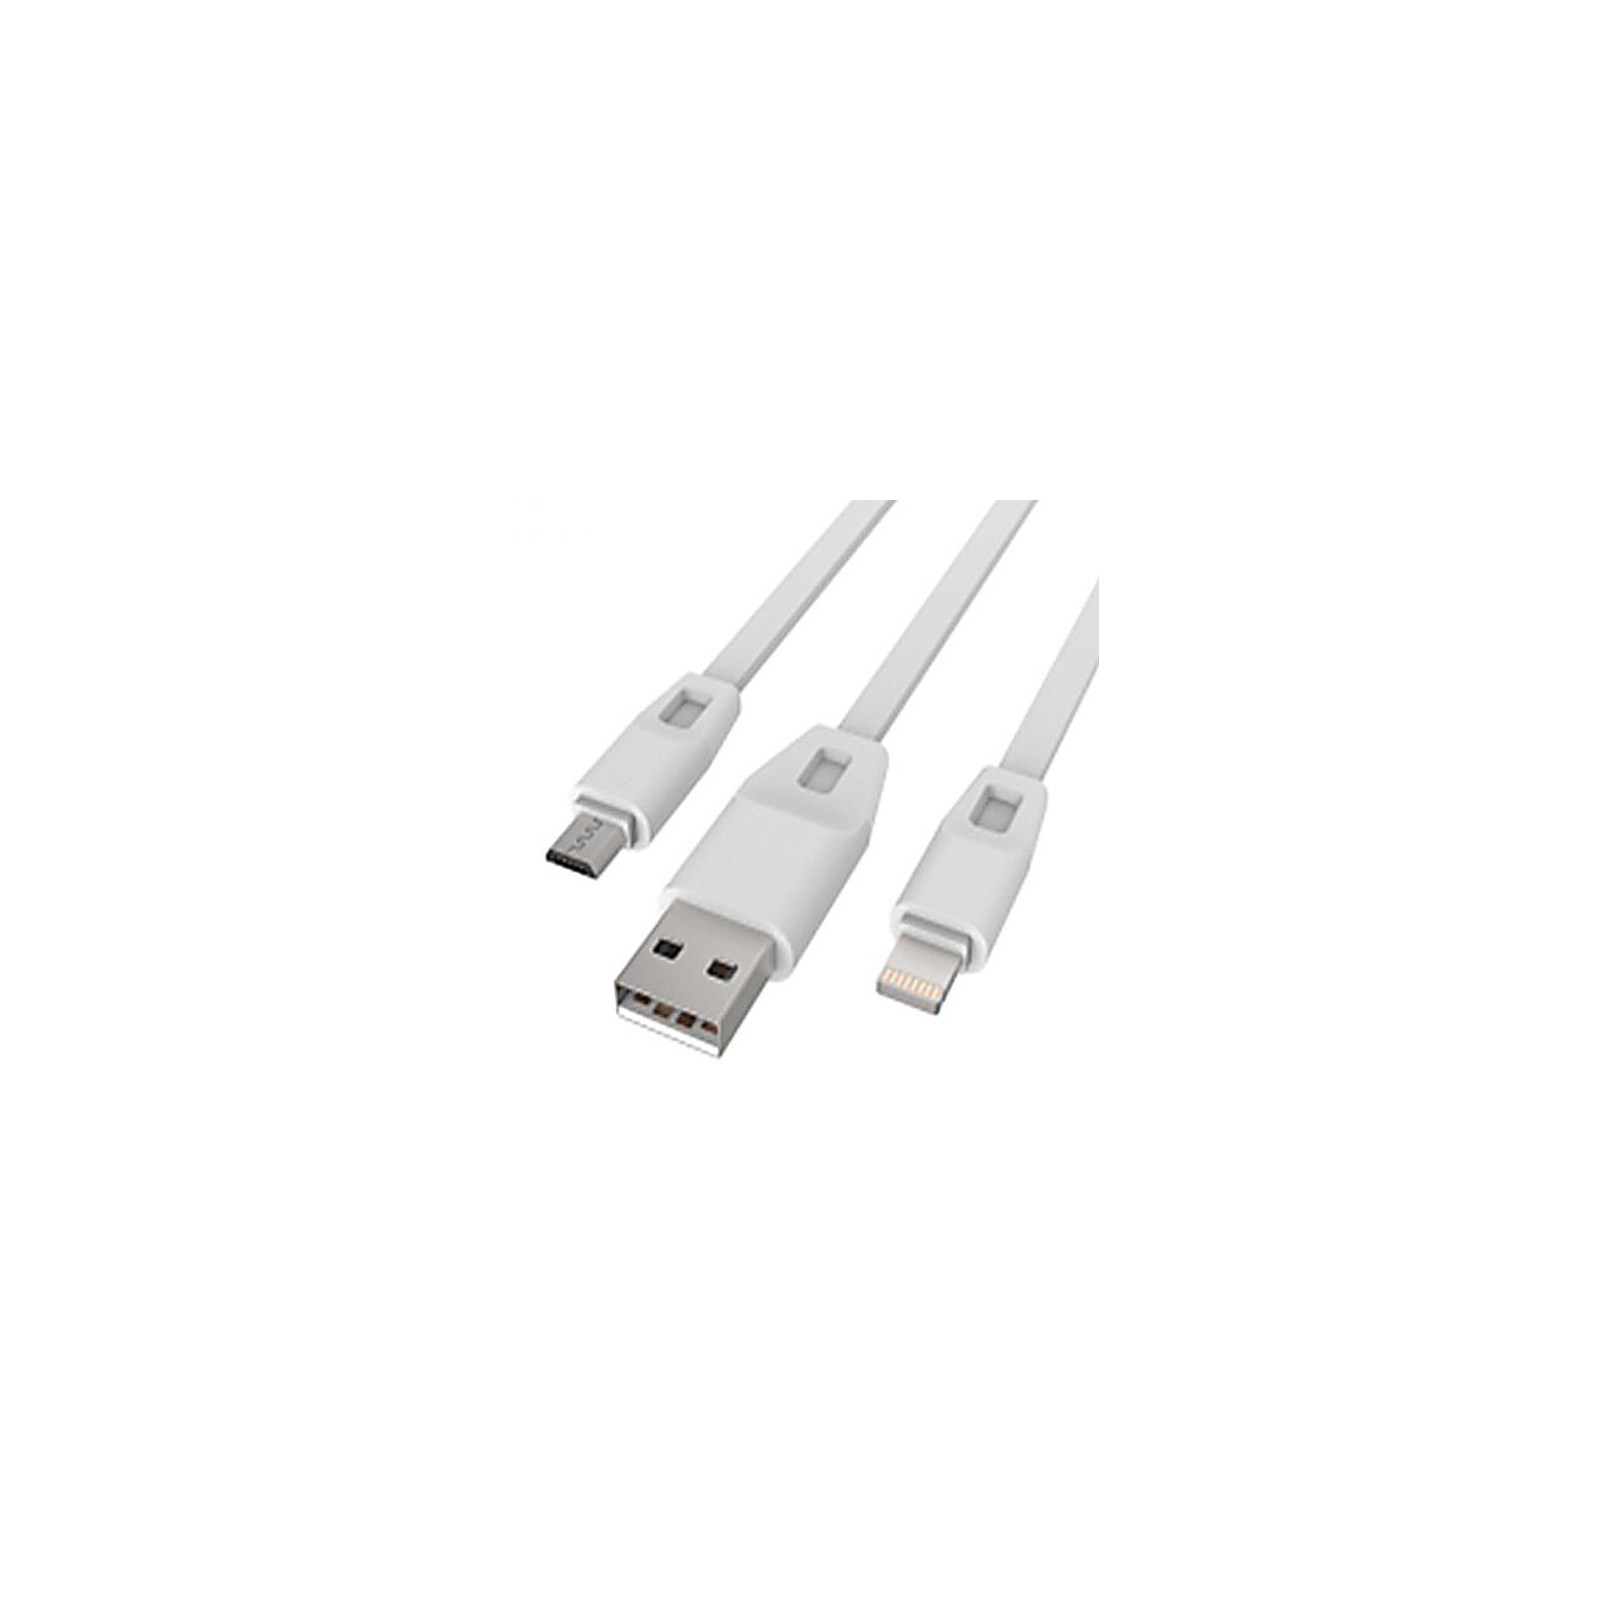 Дата кабель USB 2.0 - Micro USB/Lightning 2А (DR-1622) (White) 1,0м Drobak (219092)